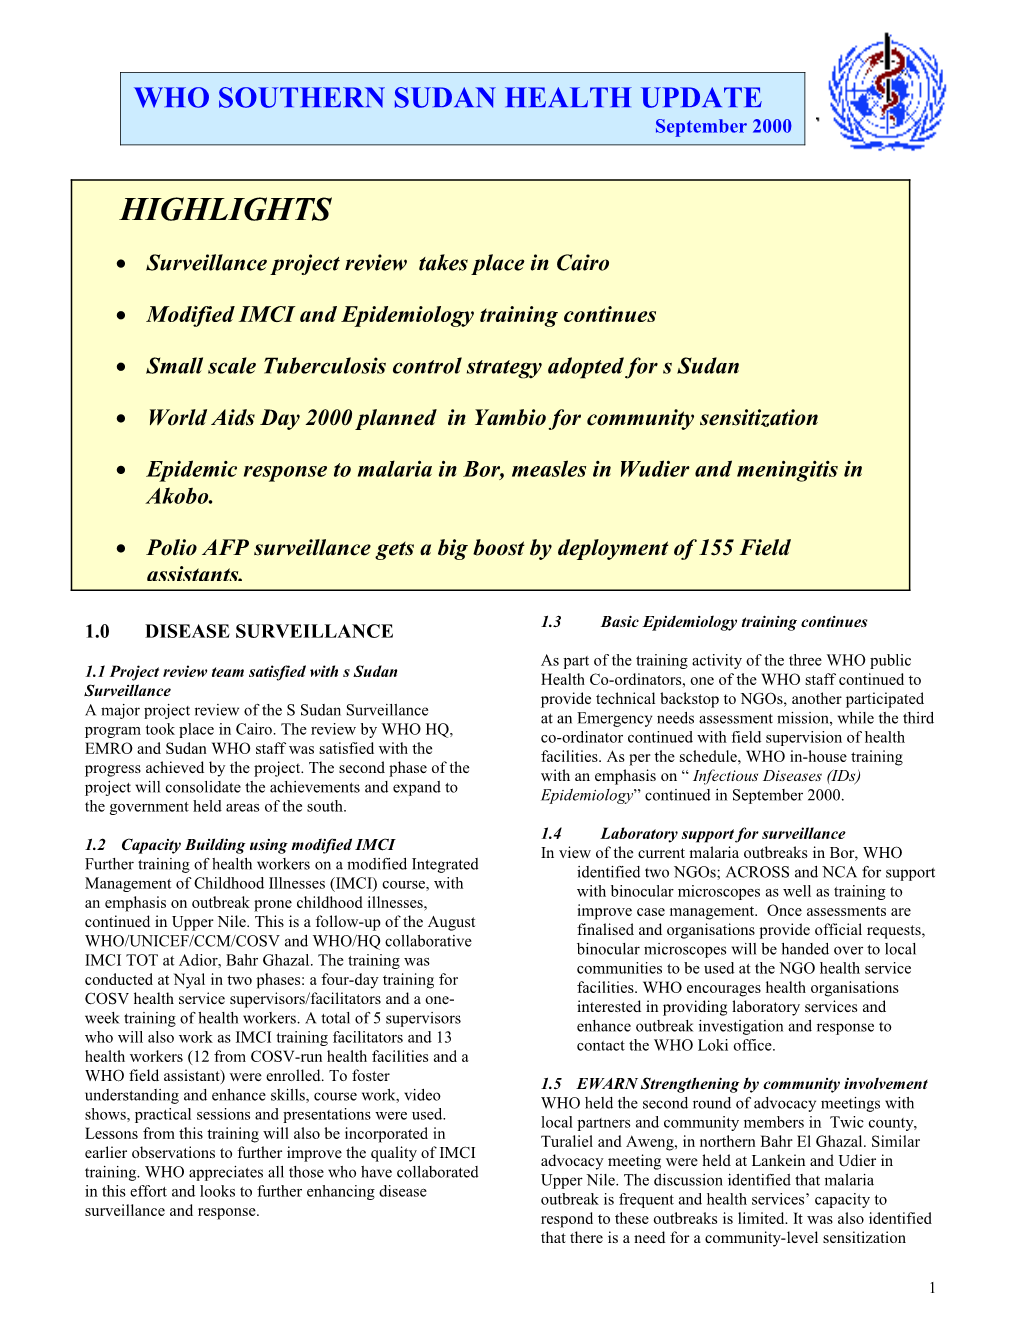 June 2000 Disease Surveillance and Response Activities Update